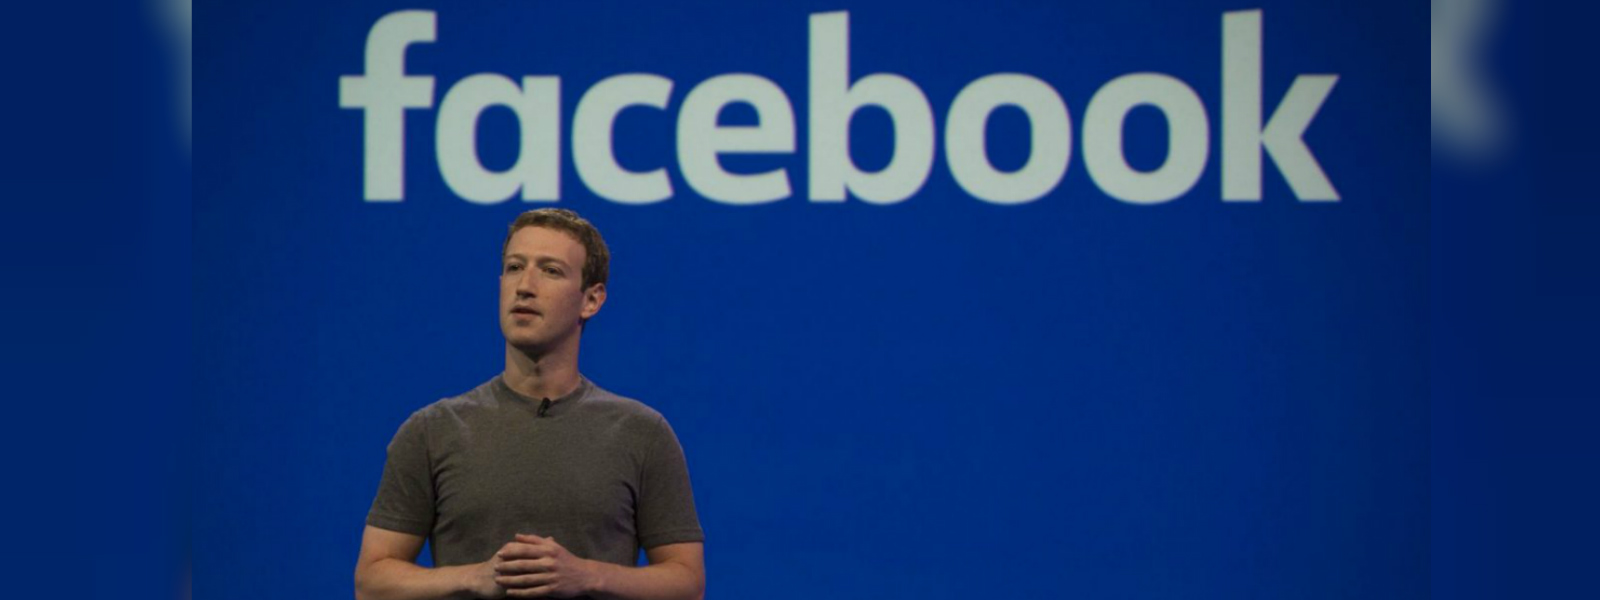 Facebook bans 5.4 billion fake accounts this year